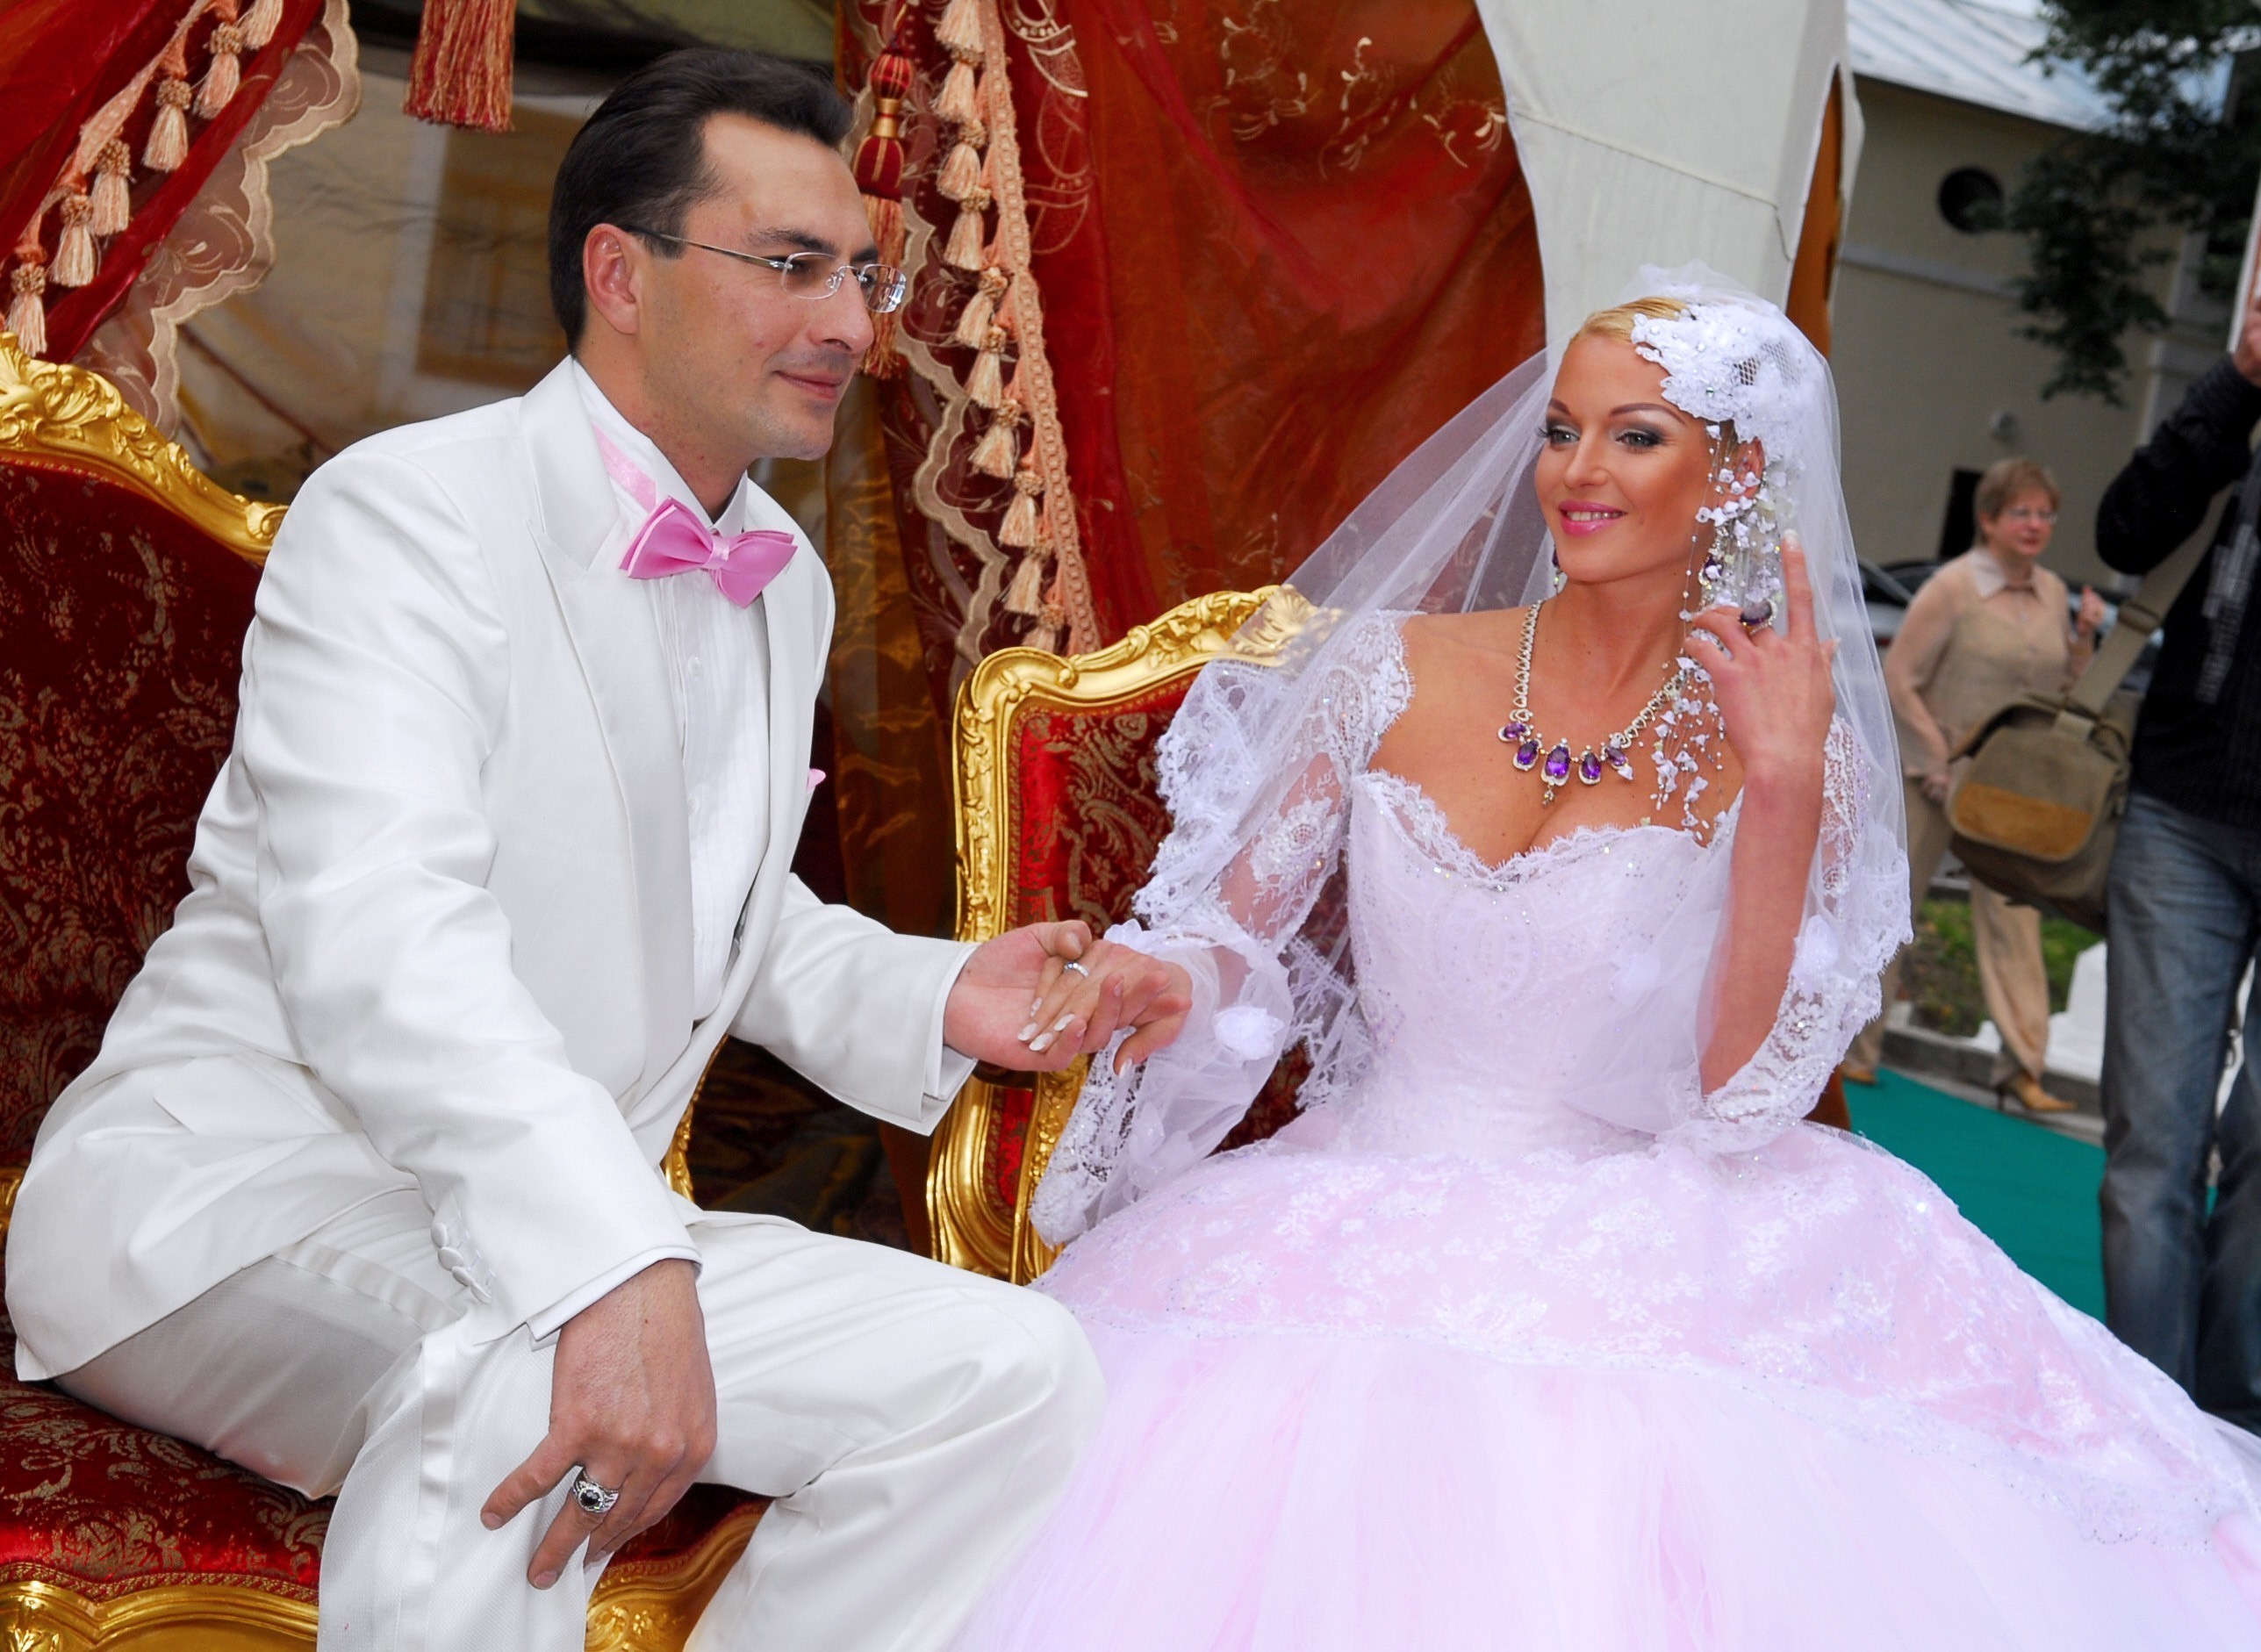 «Платье, как у принцессы Дианы»: Волочкова раскрыла подробности предстоящей свадьбы